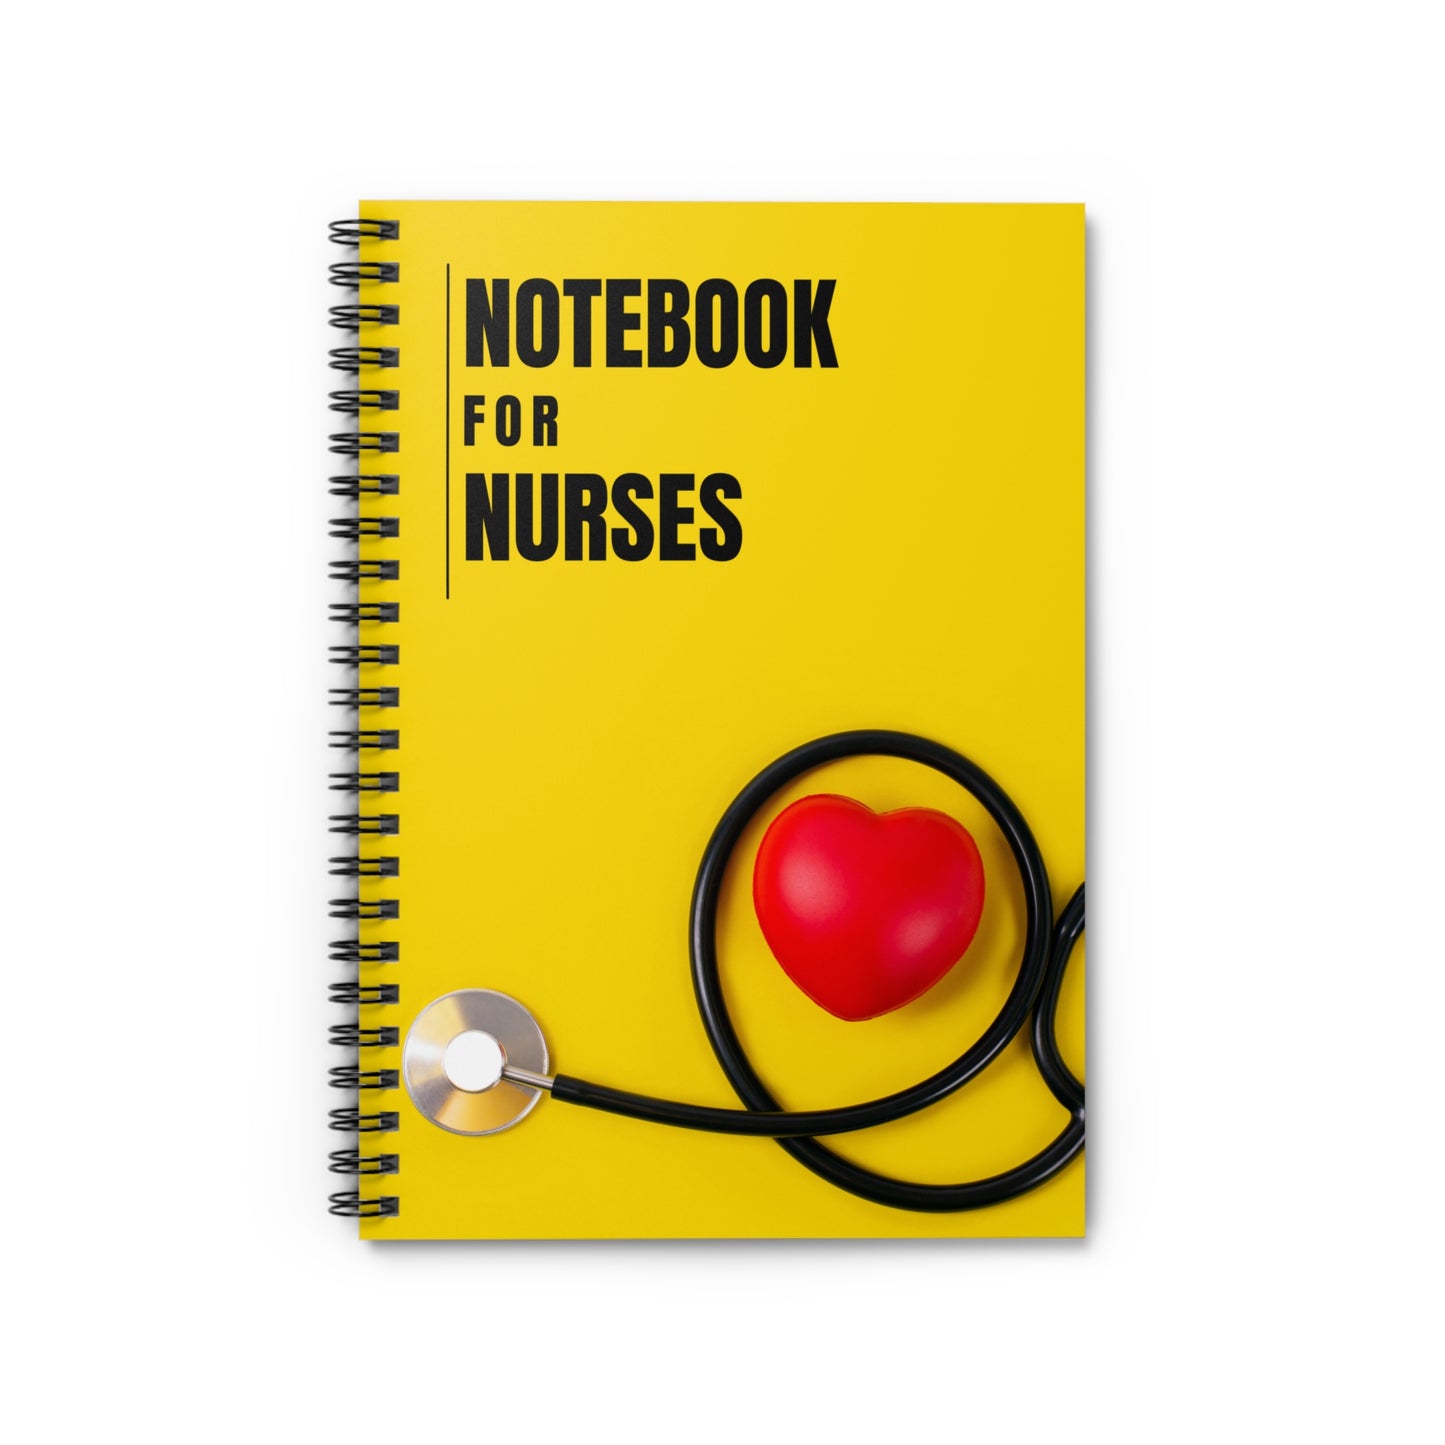 Spiral Notebook for Nursing Students: Nurse Appreciation, Nursing Notebook, Nursing Gifts, Nursing Notes, Nursing Journal, Gift for Nurses - Ruled Line Spiral Notebook